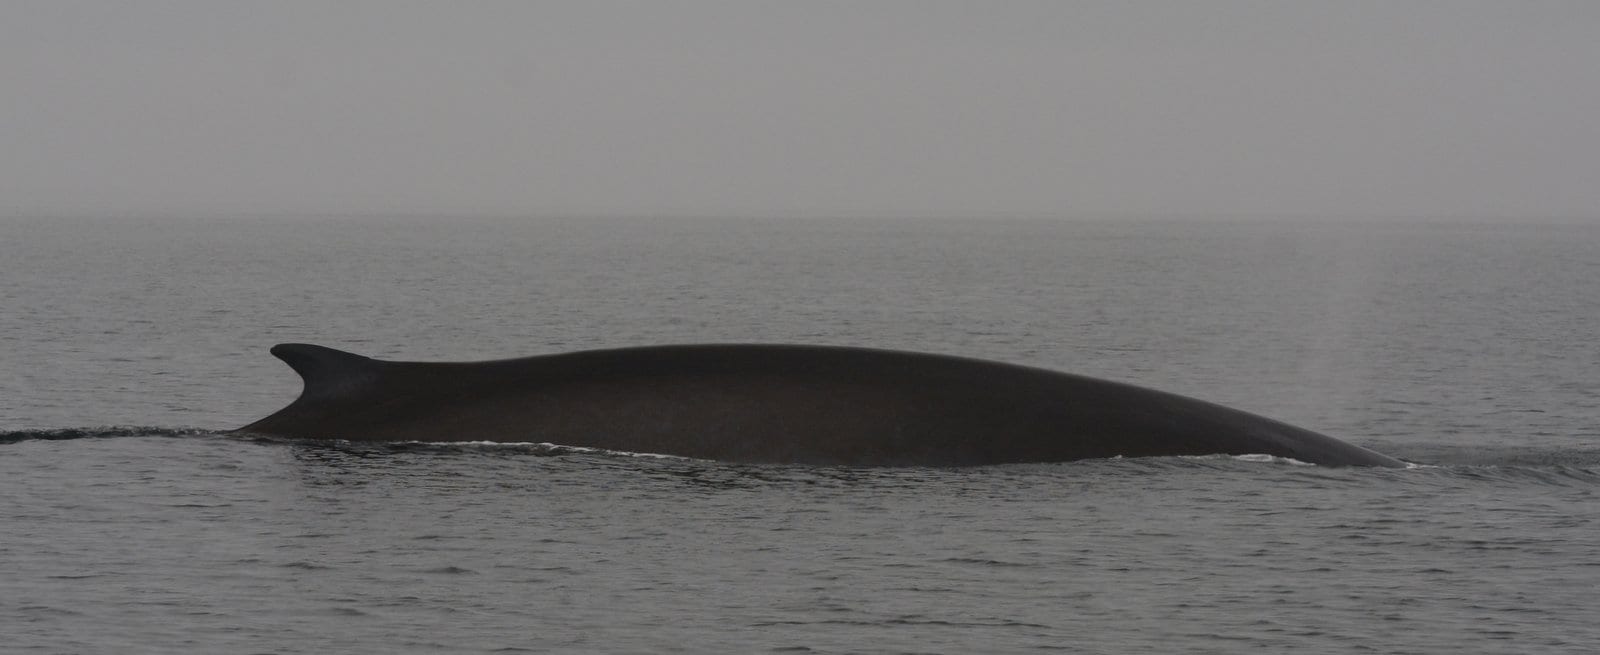 Fin whale 